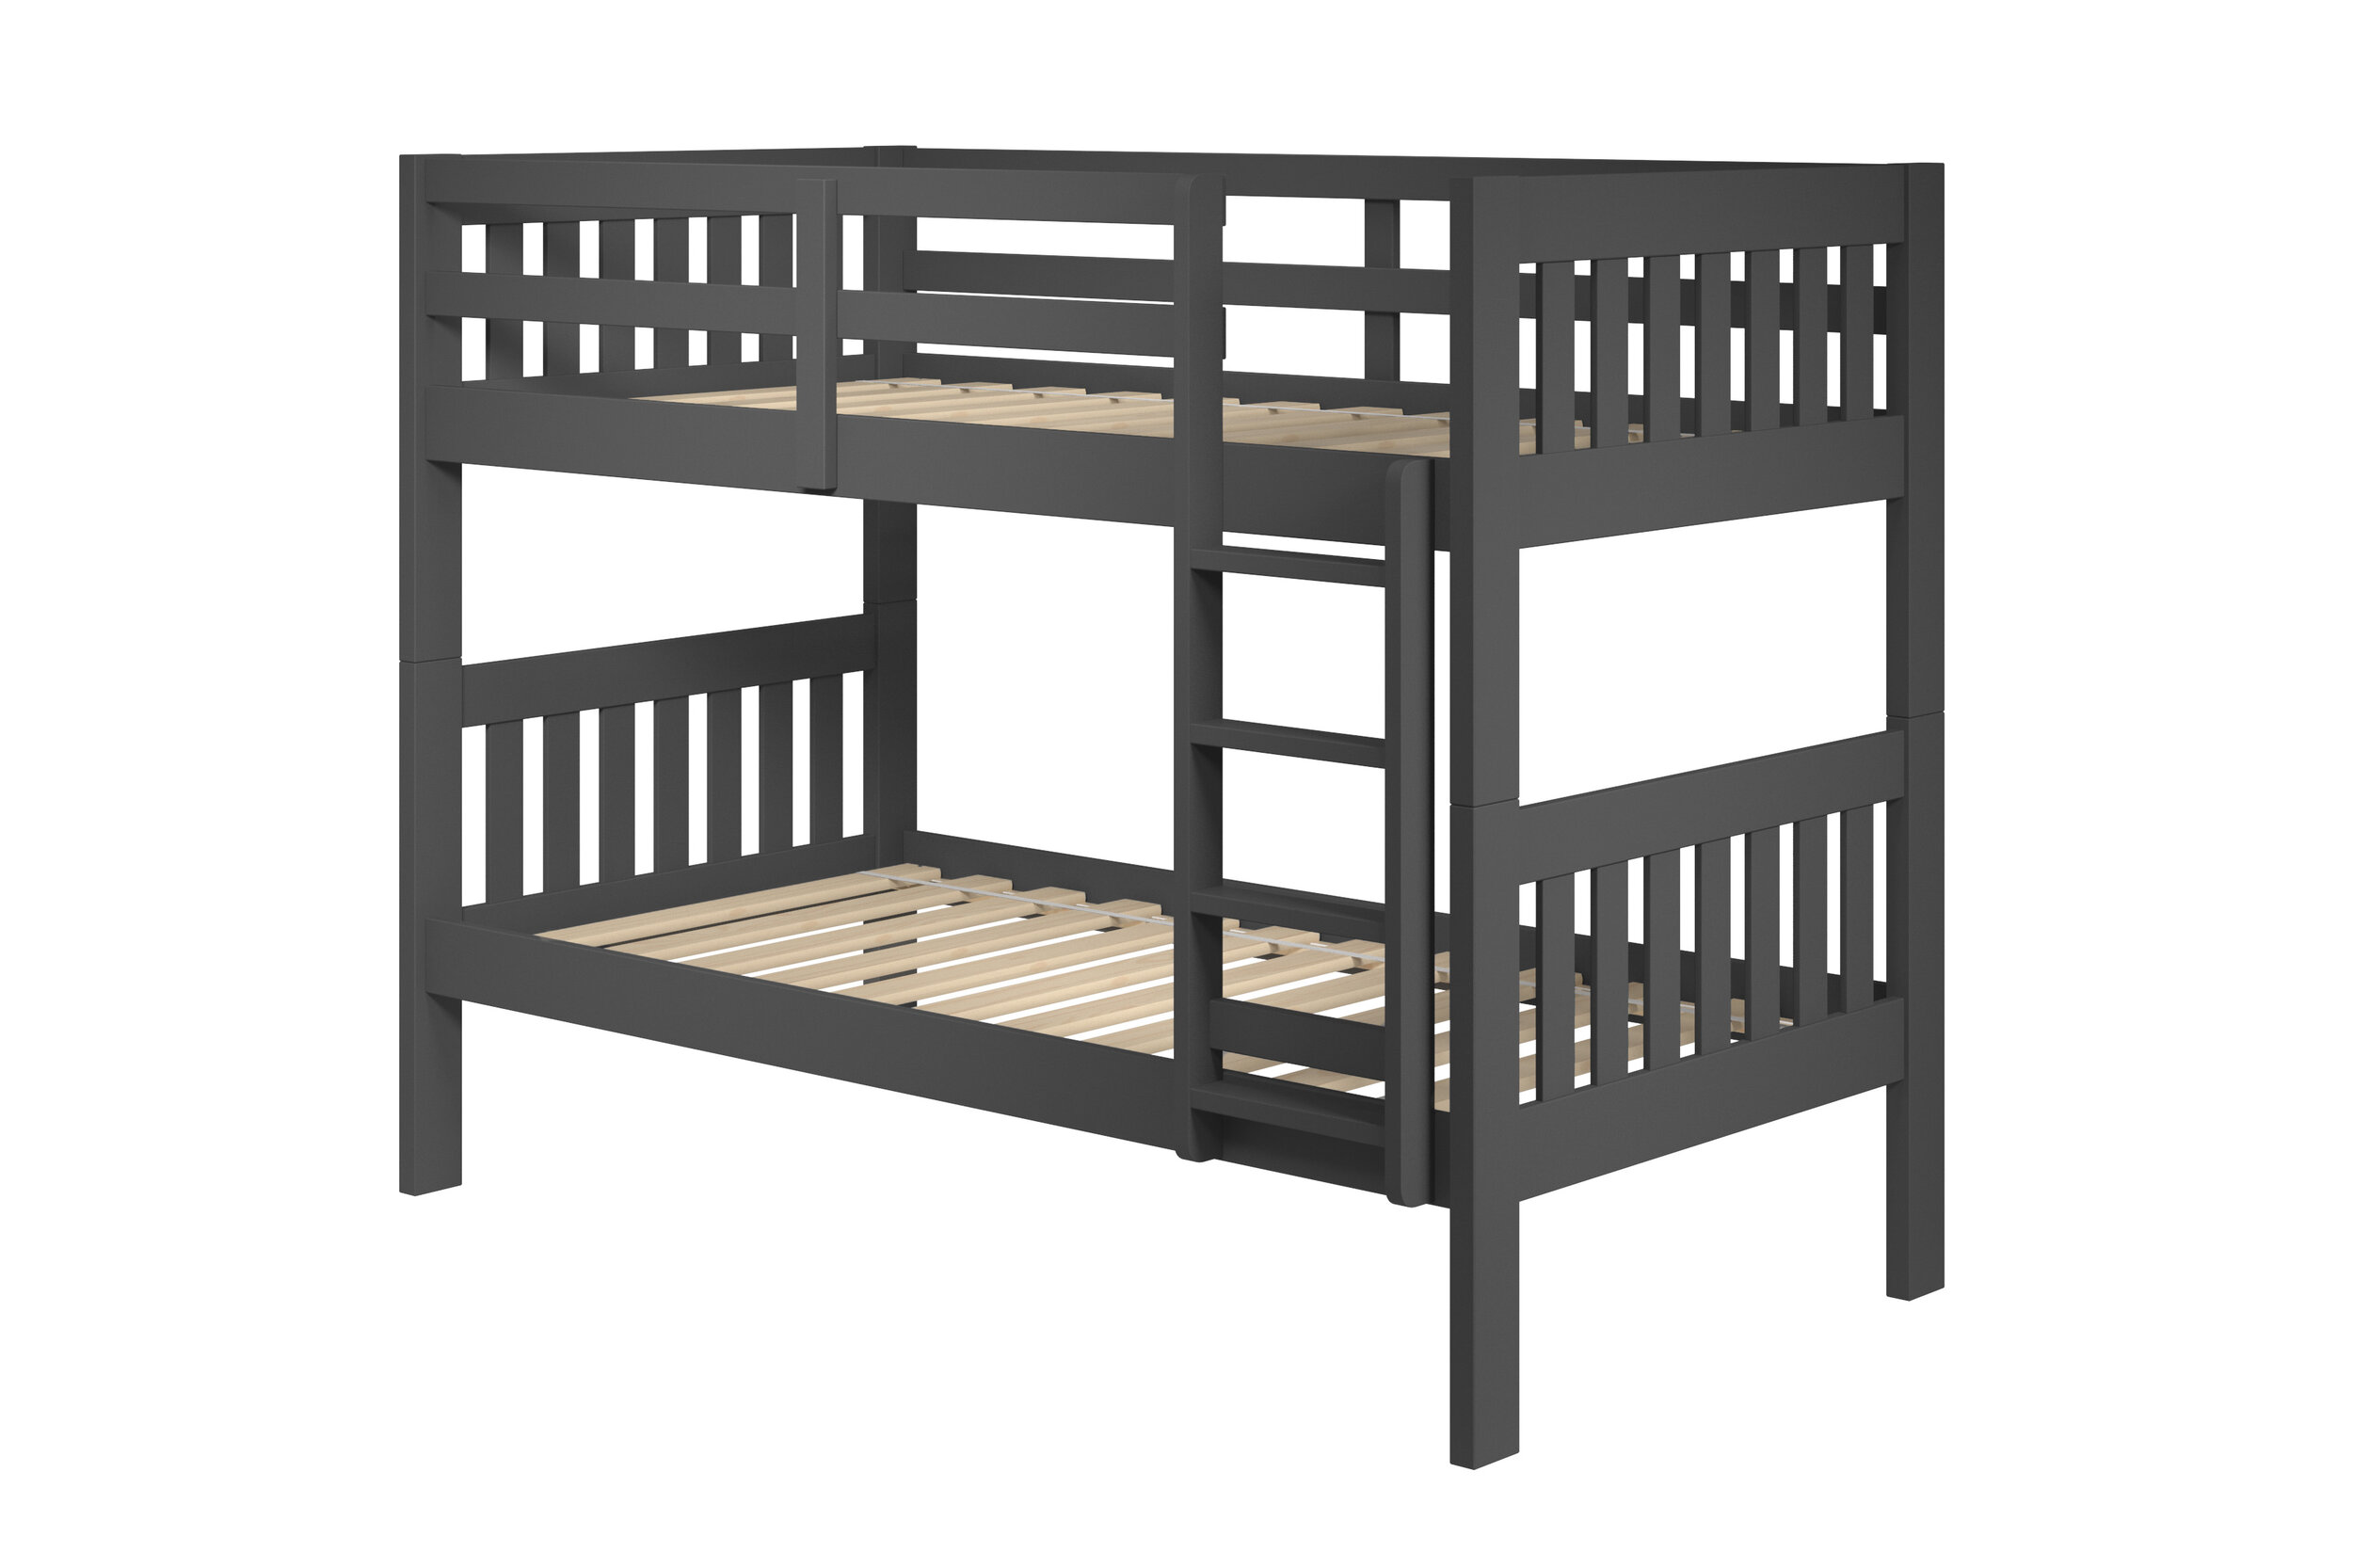 woodcrest bunk beds